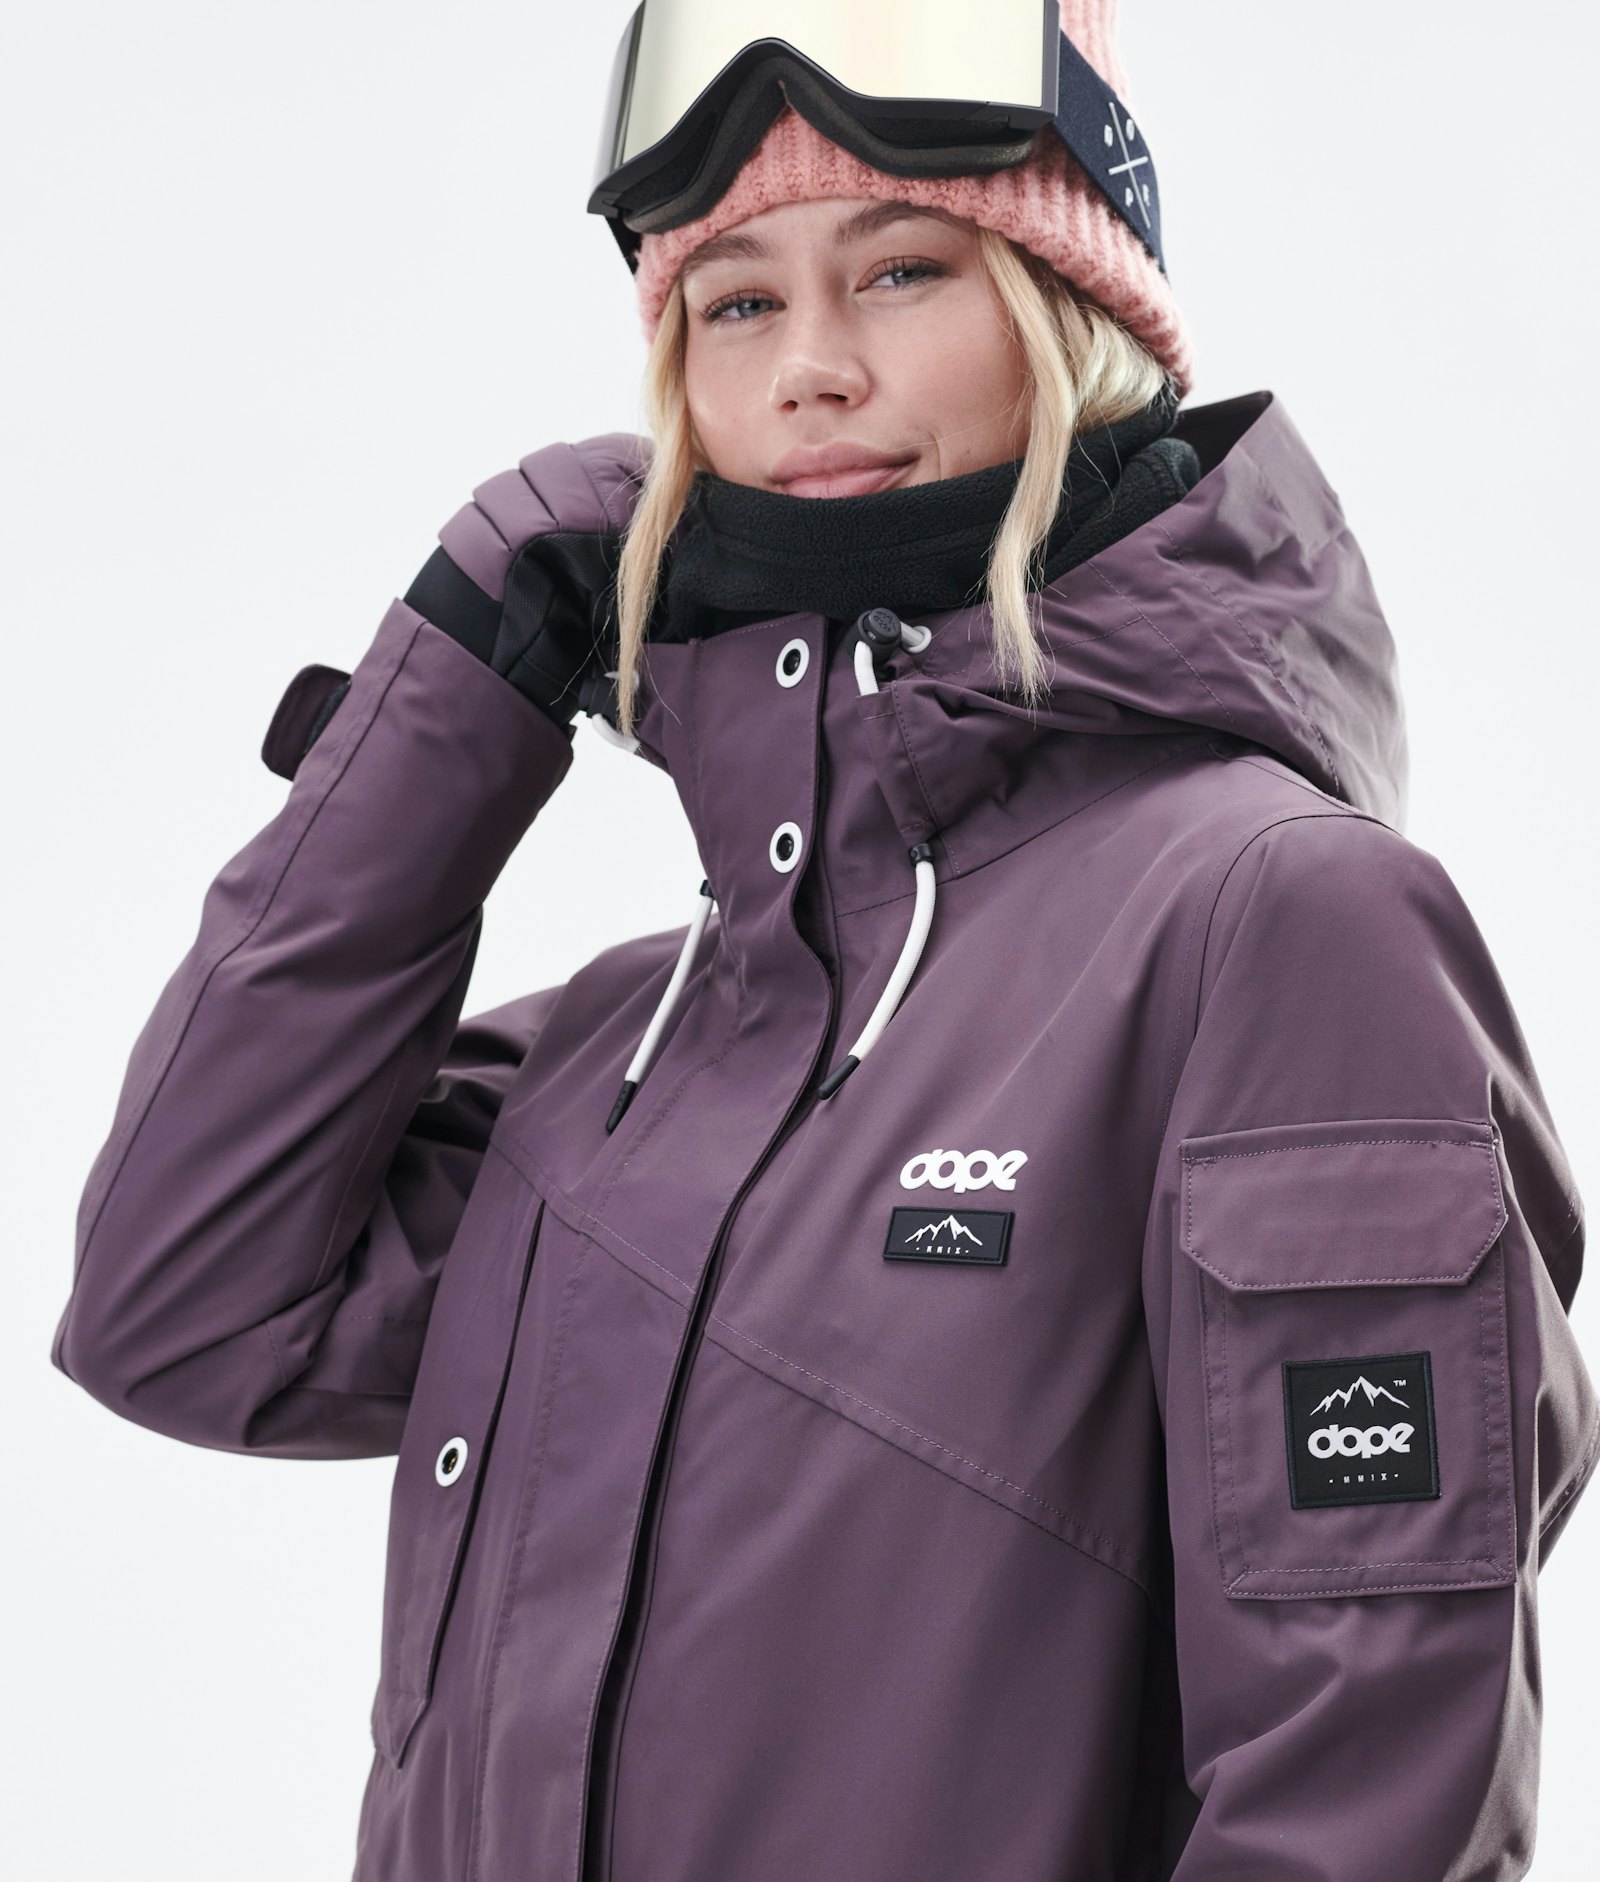 Dope Adept W 2020 Snowboard Jacket Women Faded Grape